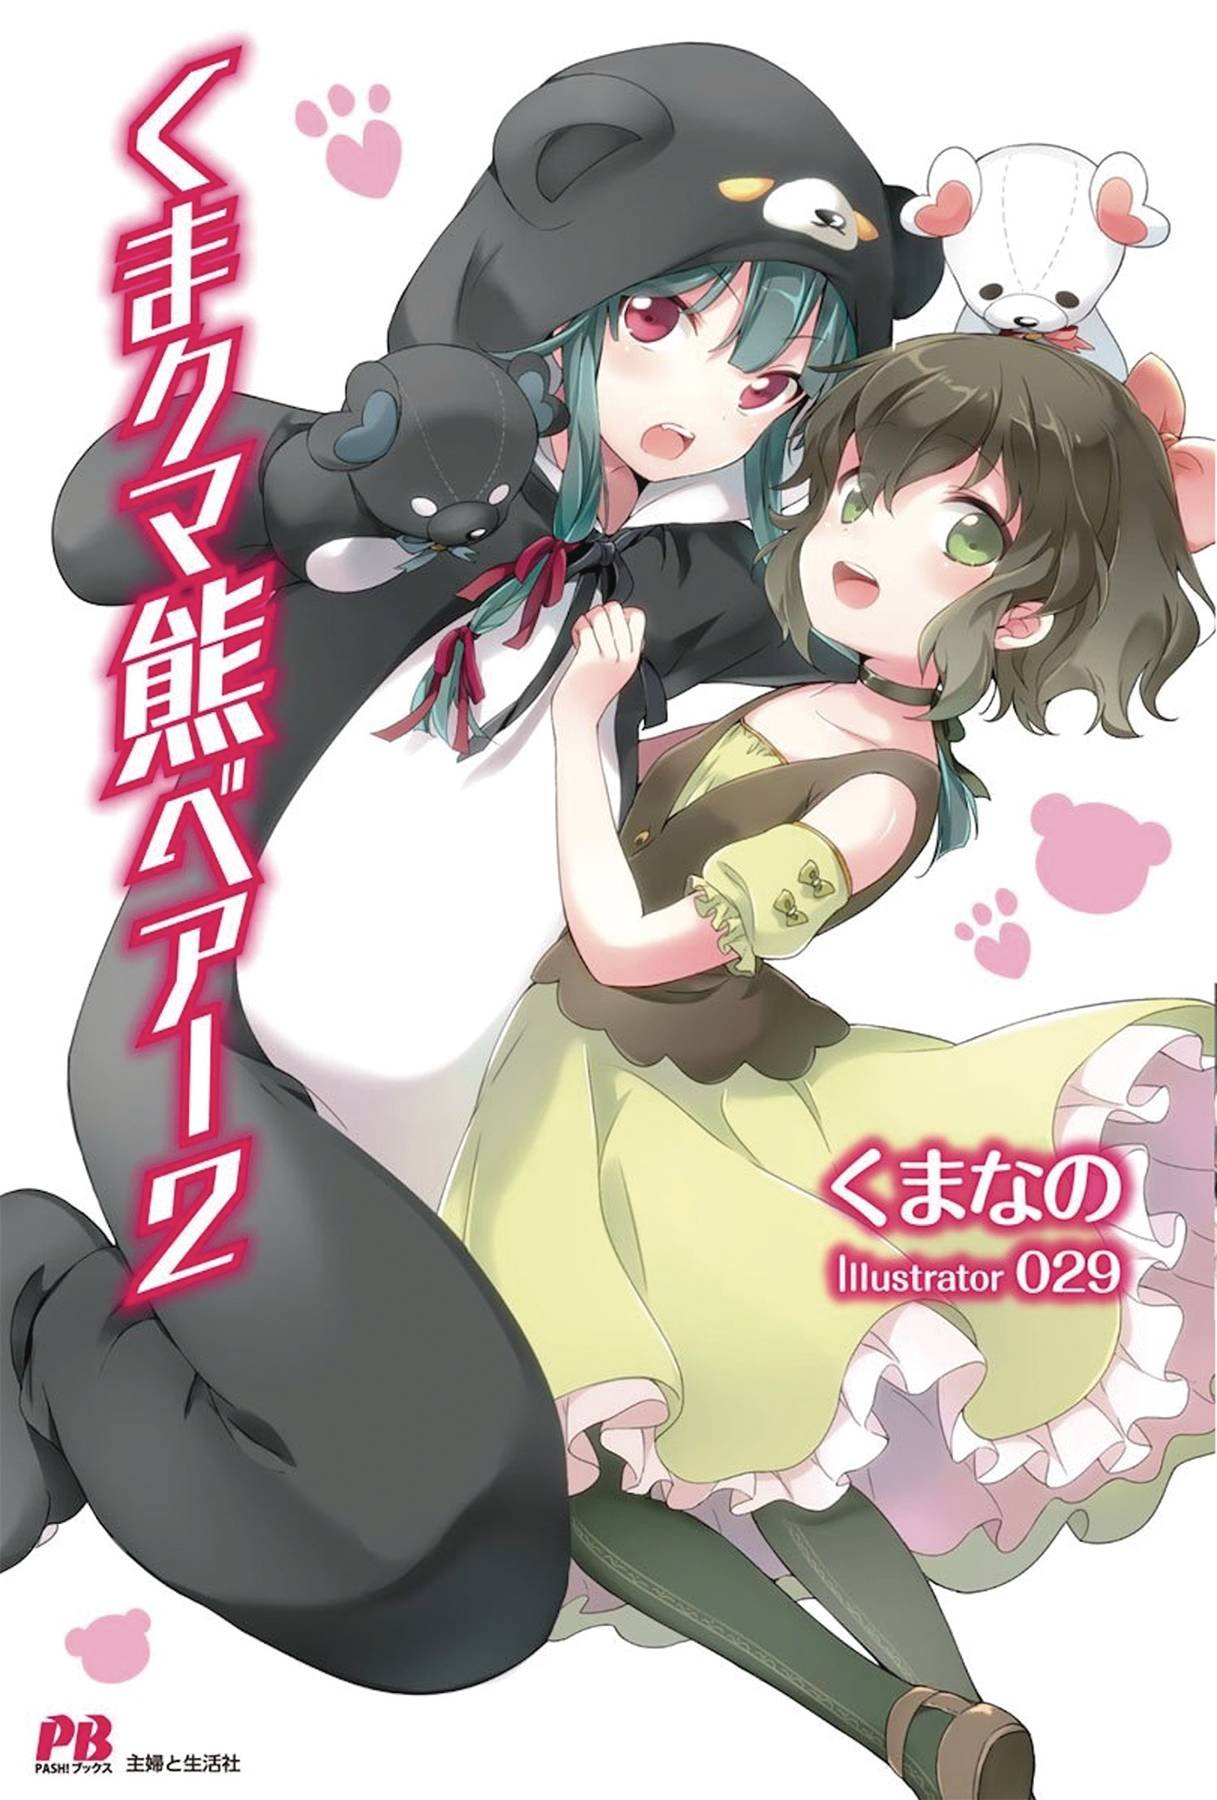 Autor de Kaifuku Jutsushi no Yarinaoshi fala sobre o erotismo da série  anime